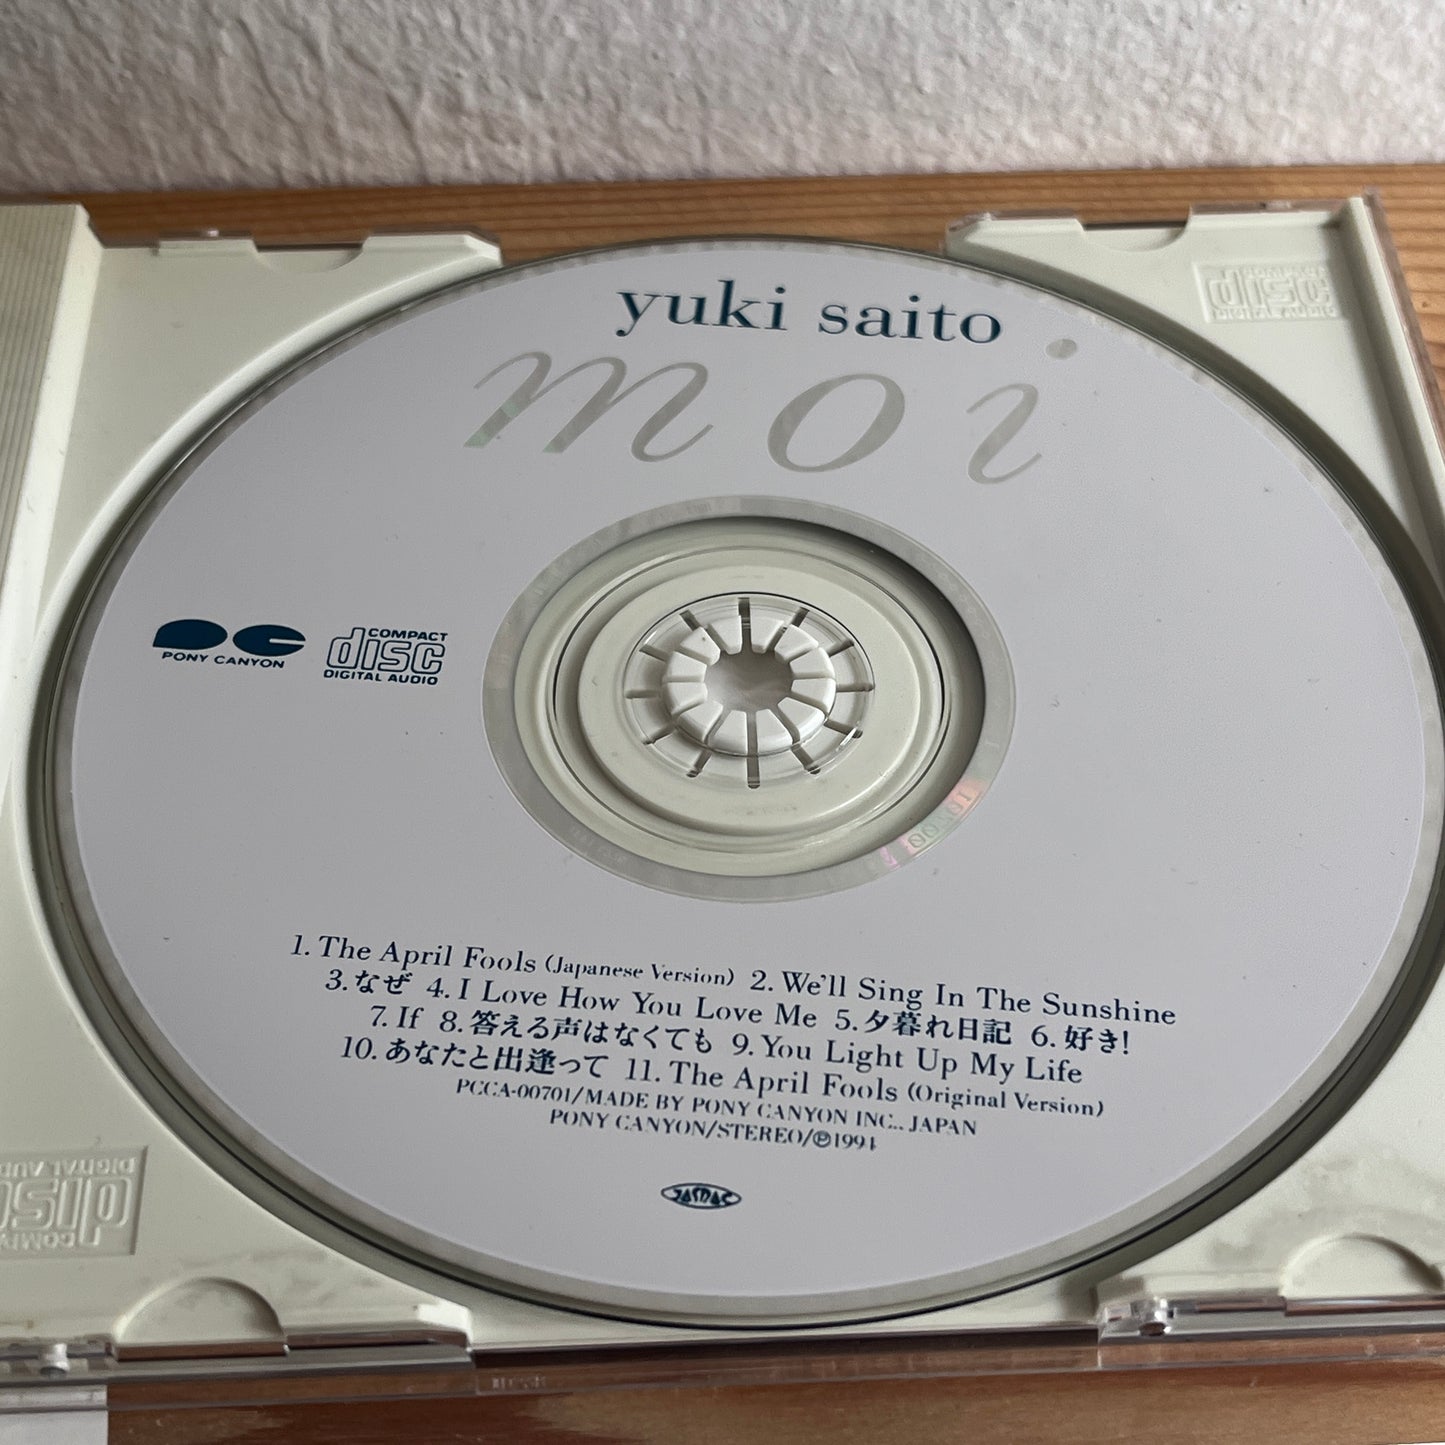 Yuki Saito 斎藤由貴 – Moi モア